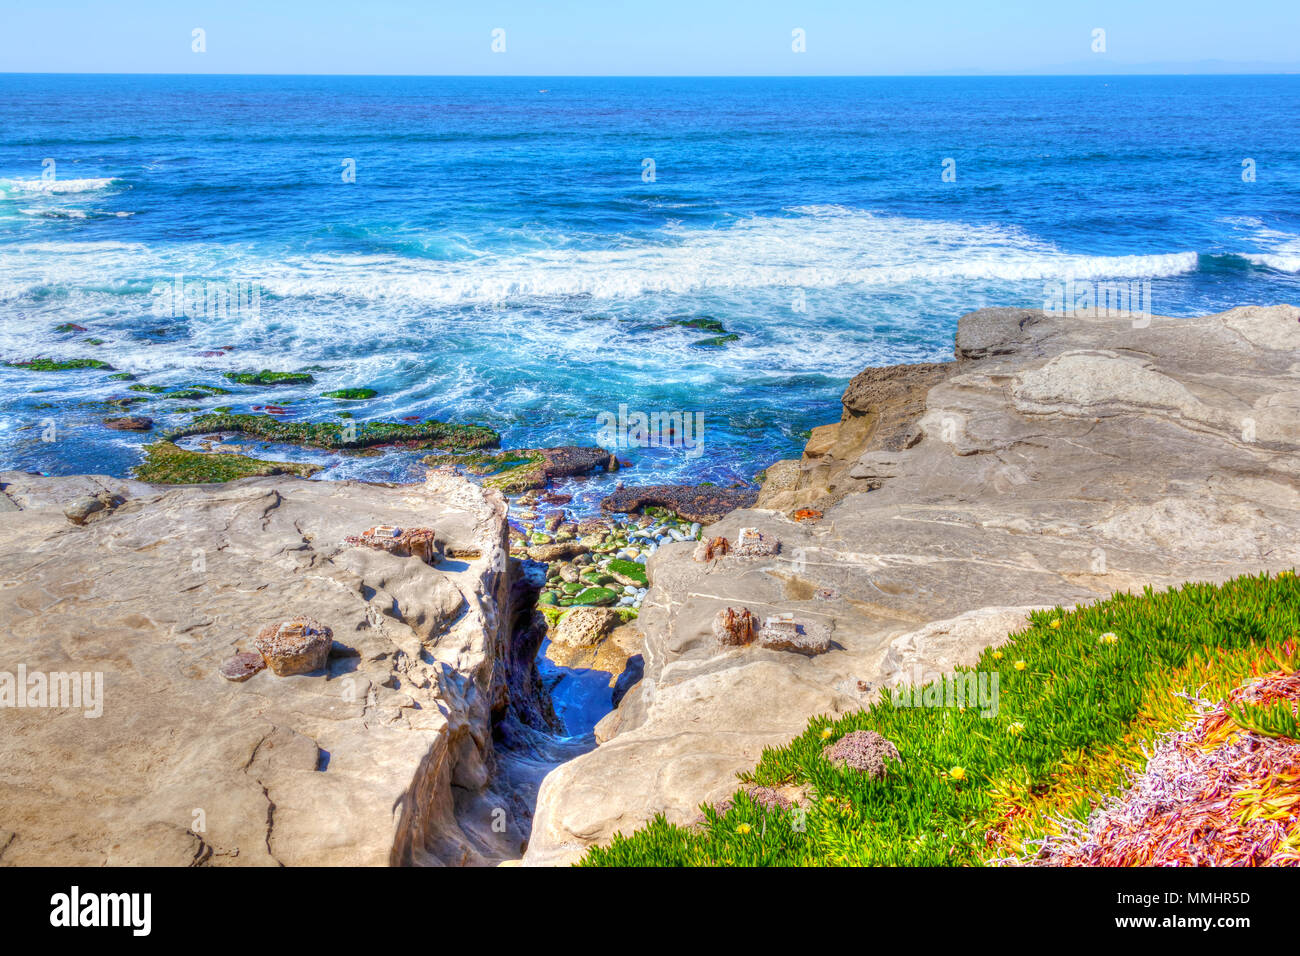 Las olas del Océano Pacífico libra contra los acantilados rocosos de La Jolla Beach en San Diego, California. La costa escénica es una atracción popular Foto de stock